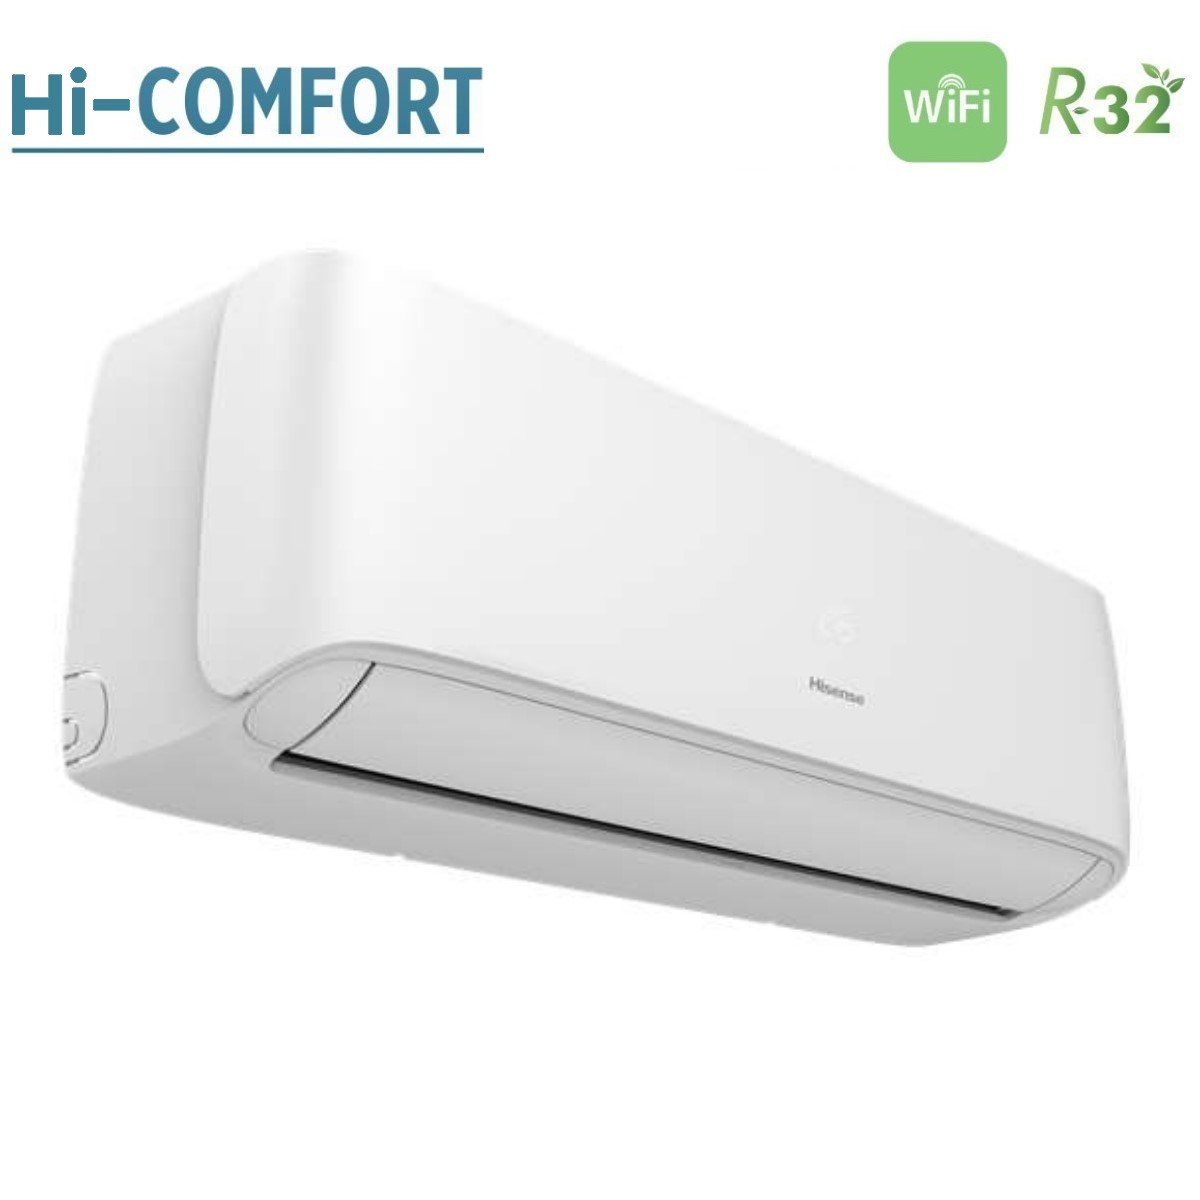 immagine-3-hisense-climatizzatore-condizionatore-hisense-trial-split-inverter-serie-hi-comfort-121212-con-3amw72u4rfa-r-32-wi-fi-integrato-120001200012000-novita